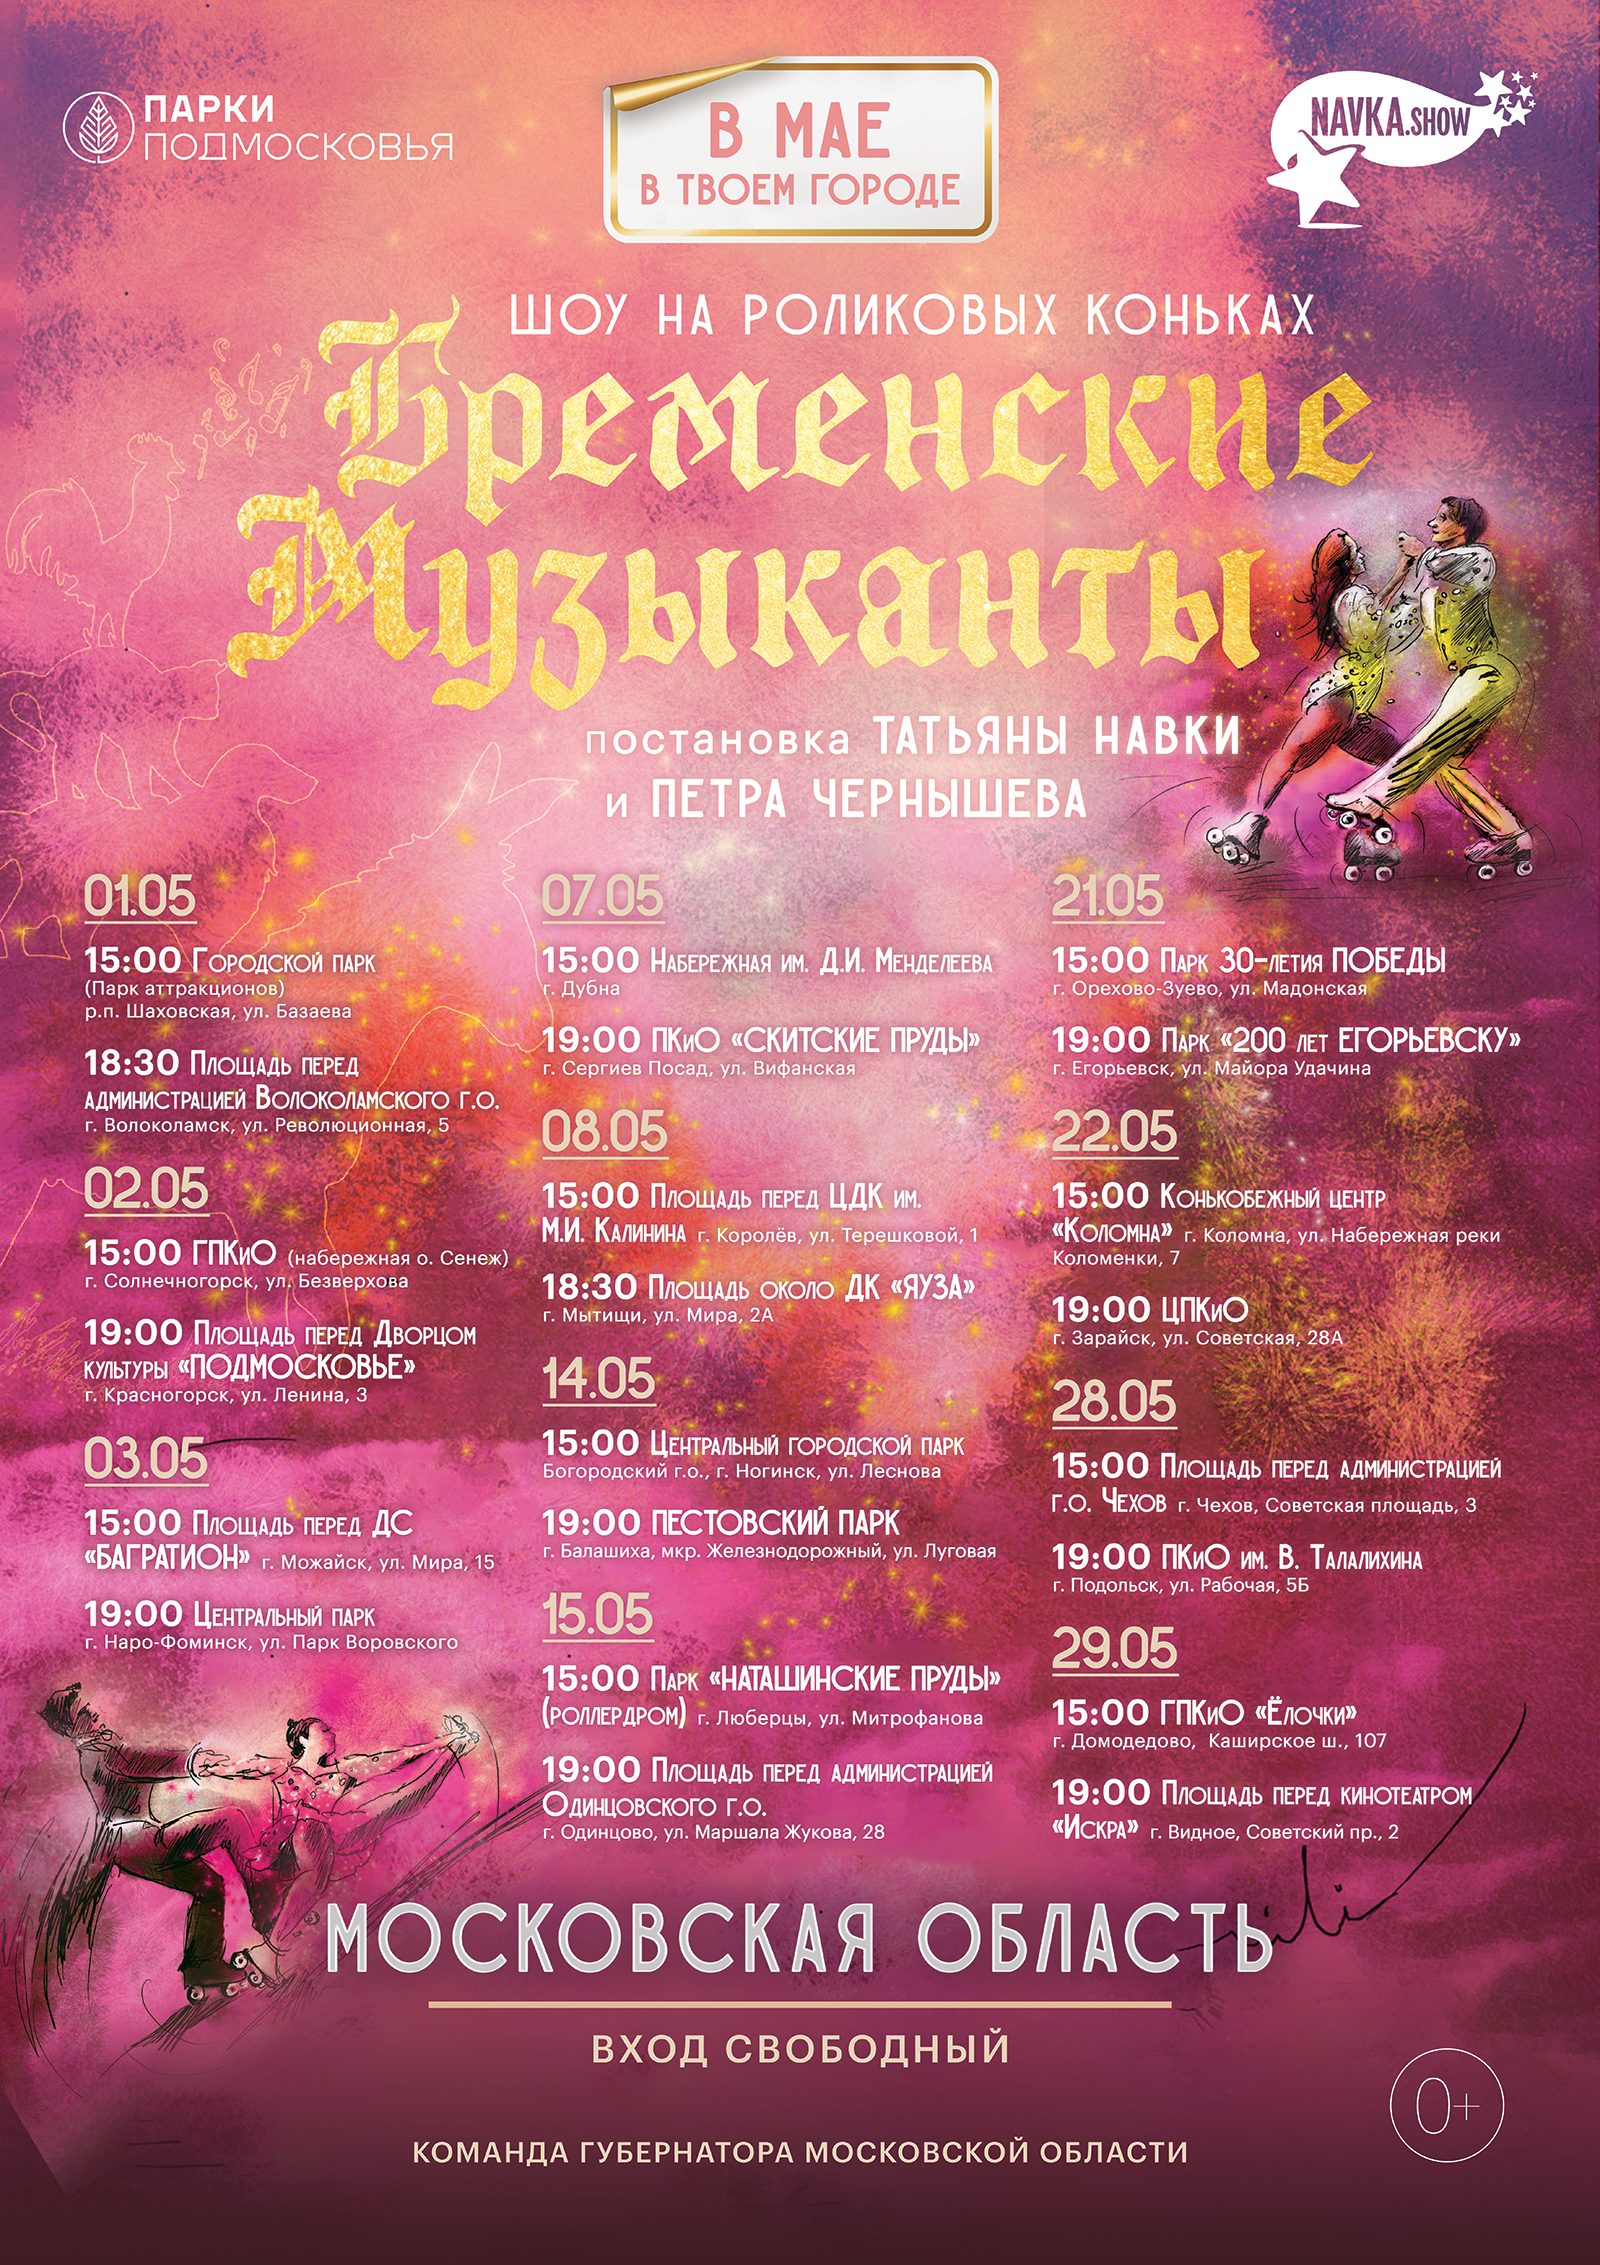 Шоу на роликовых коньках «Бременские музыканты» покажут в 22 городских округах Подмосковья